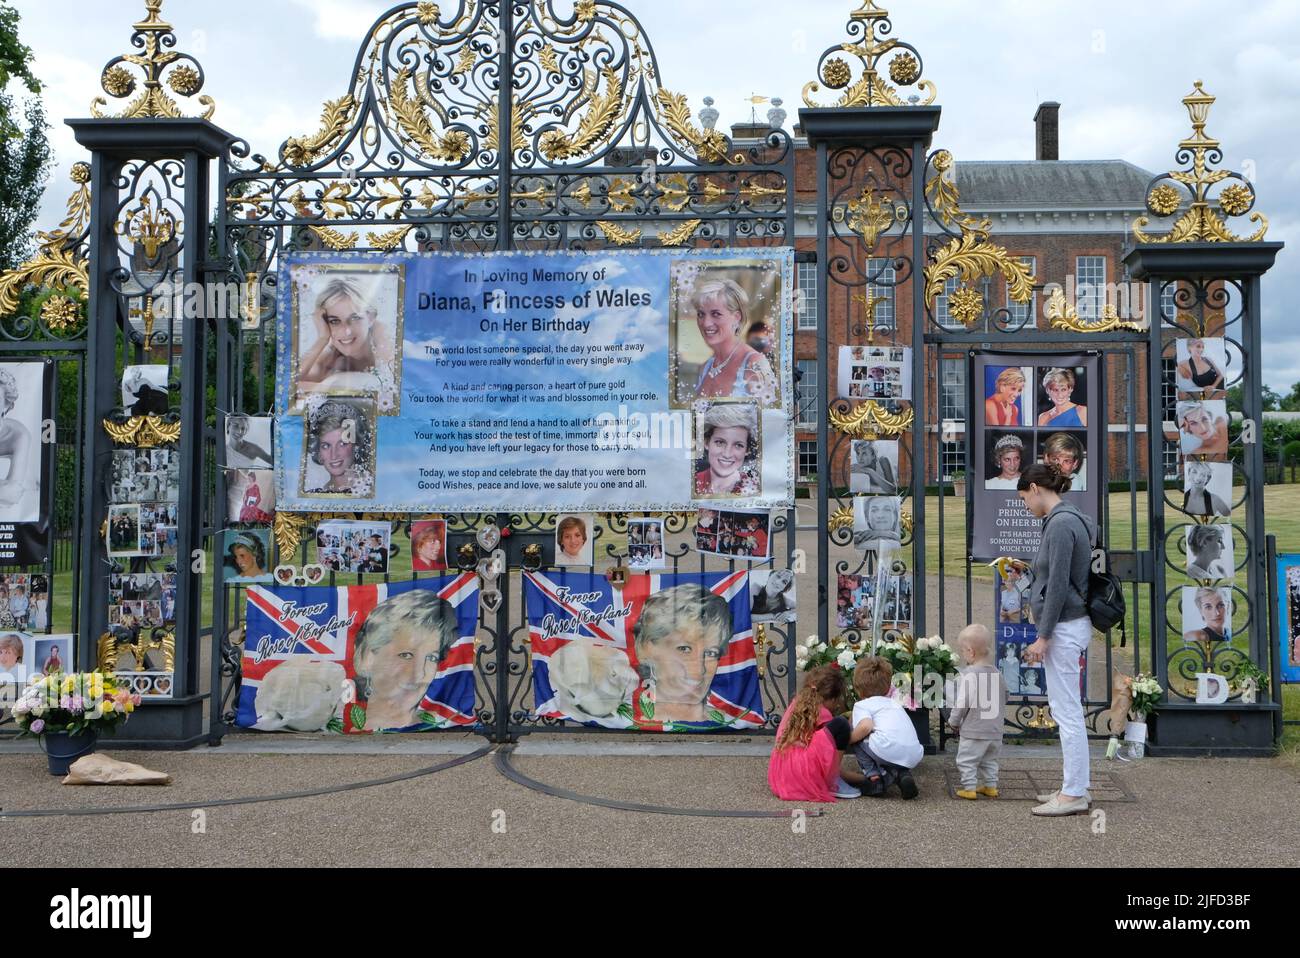 Londra, Regno Unito, 1st luglio 2022. I tifosi reali creano un omaggio annuale alla principessa Diana il suo compleanno, lasciando fiori, ornamenti e striscioni in suo onore alle porte della sua ex casa, Kensington Palace. Diana avrebbe girato 61 quest'anno. Credit: Undicesima ora Fotografia/Alamy Live News Foto Stock